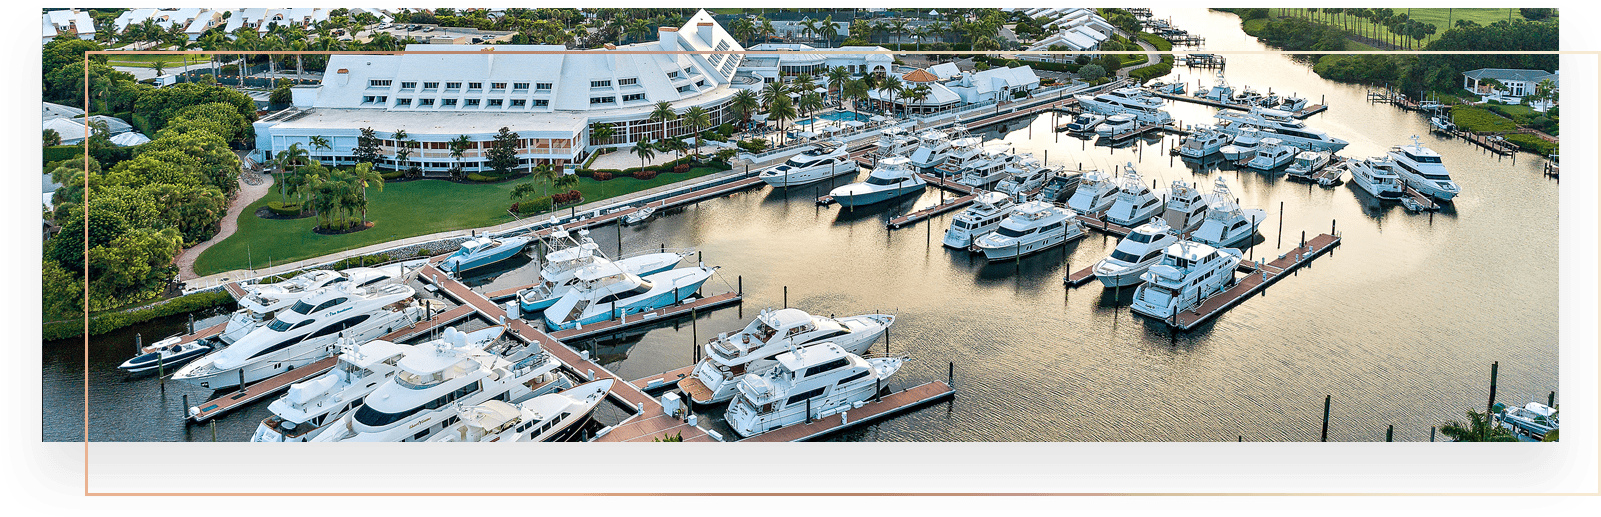 Luxury Yacht Marina Aerial View